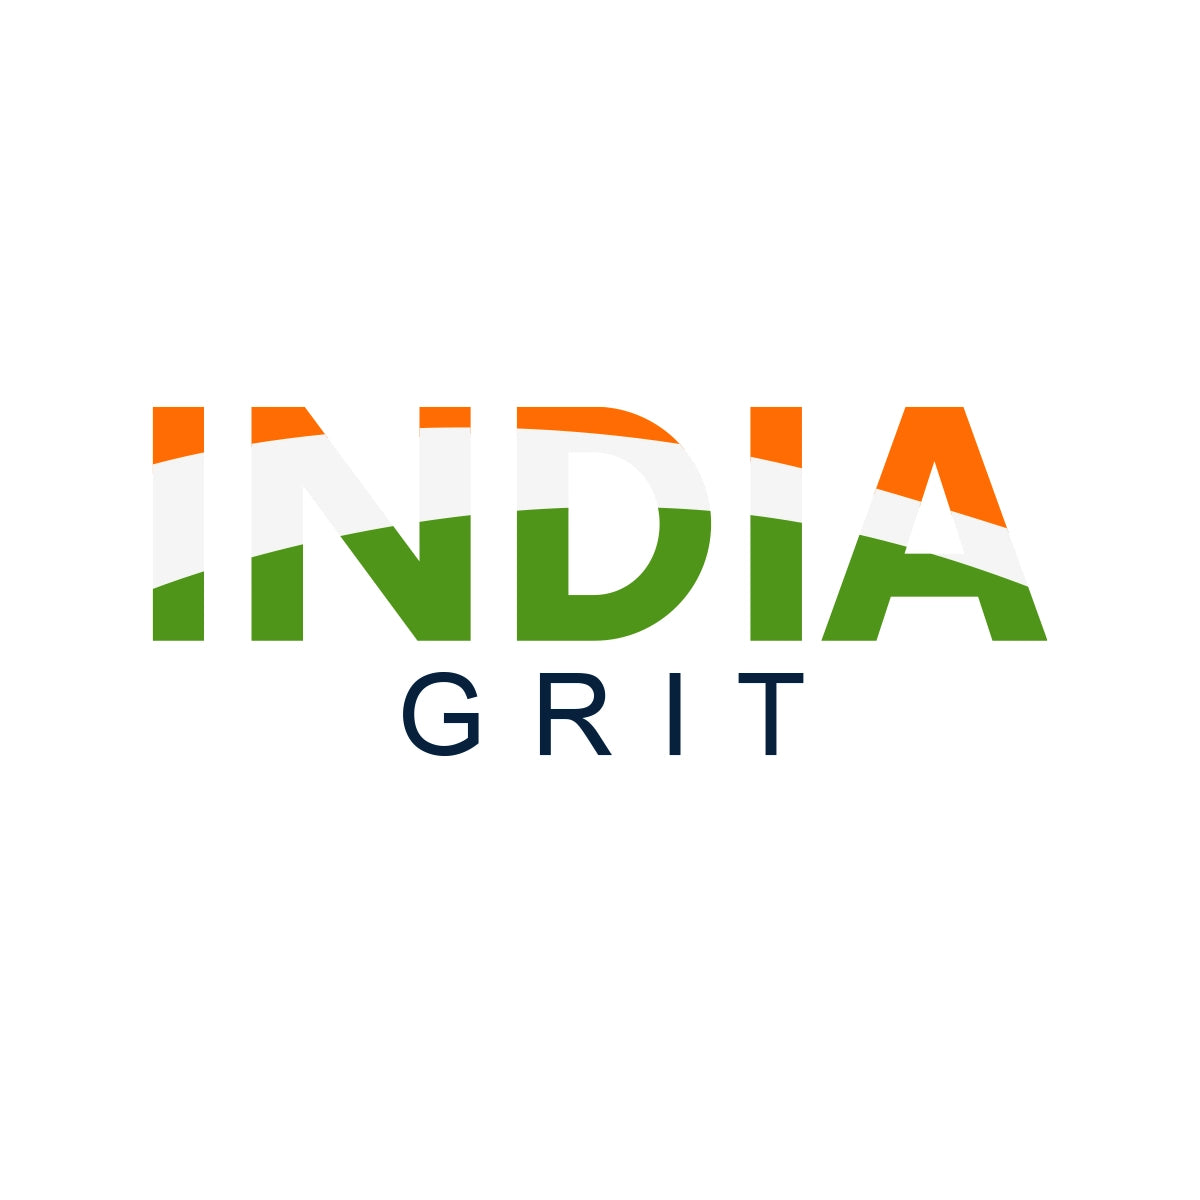 IndiaGrit.com